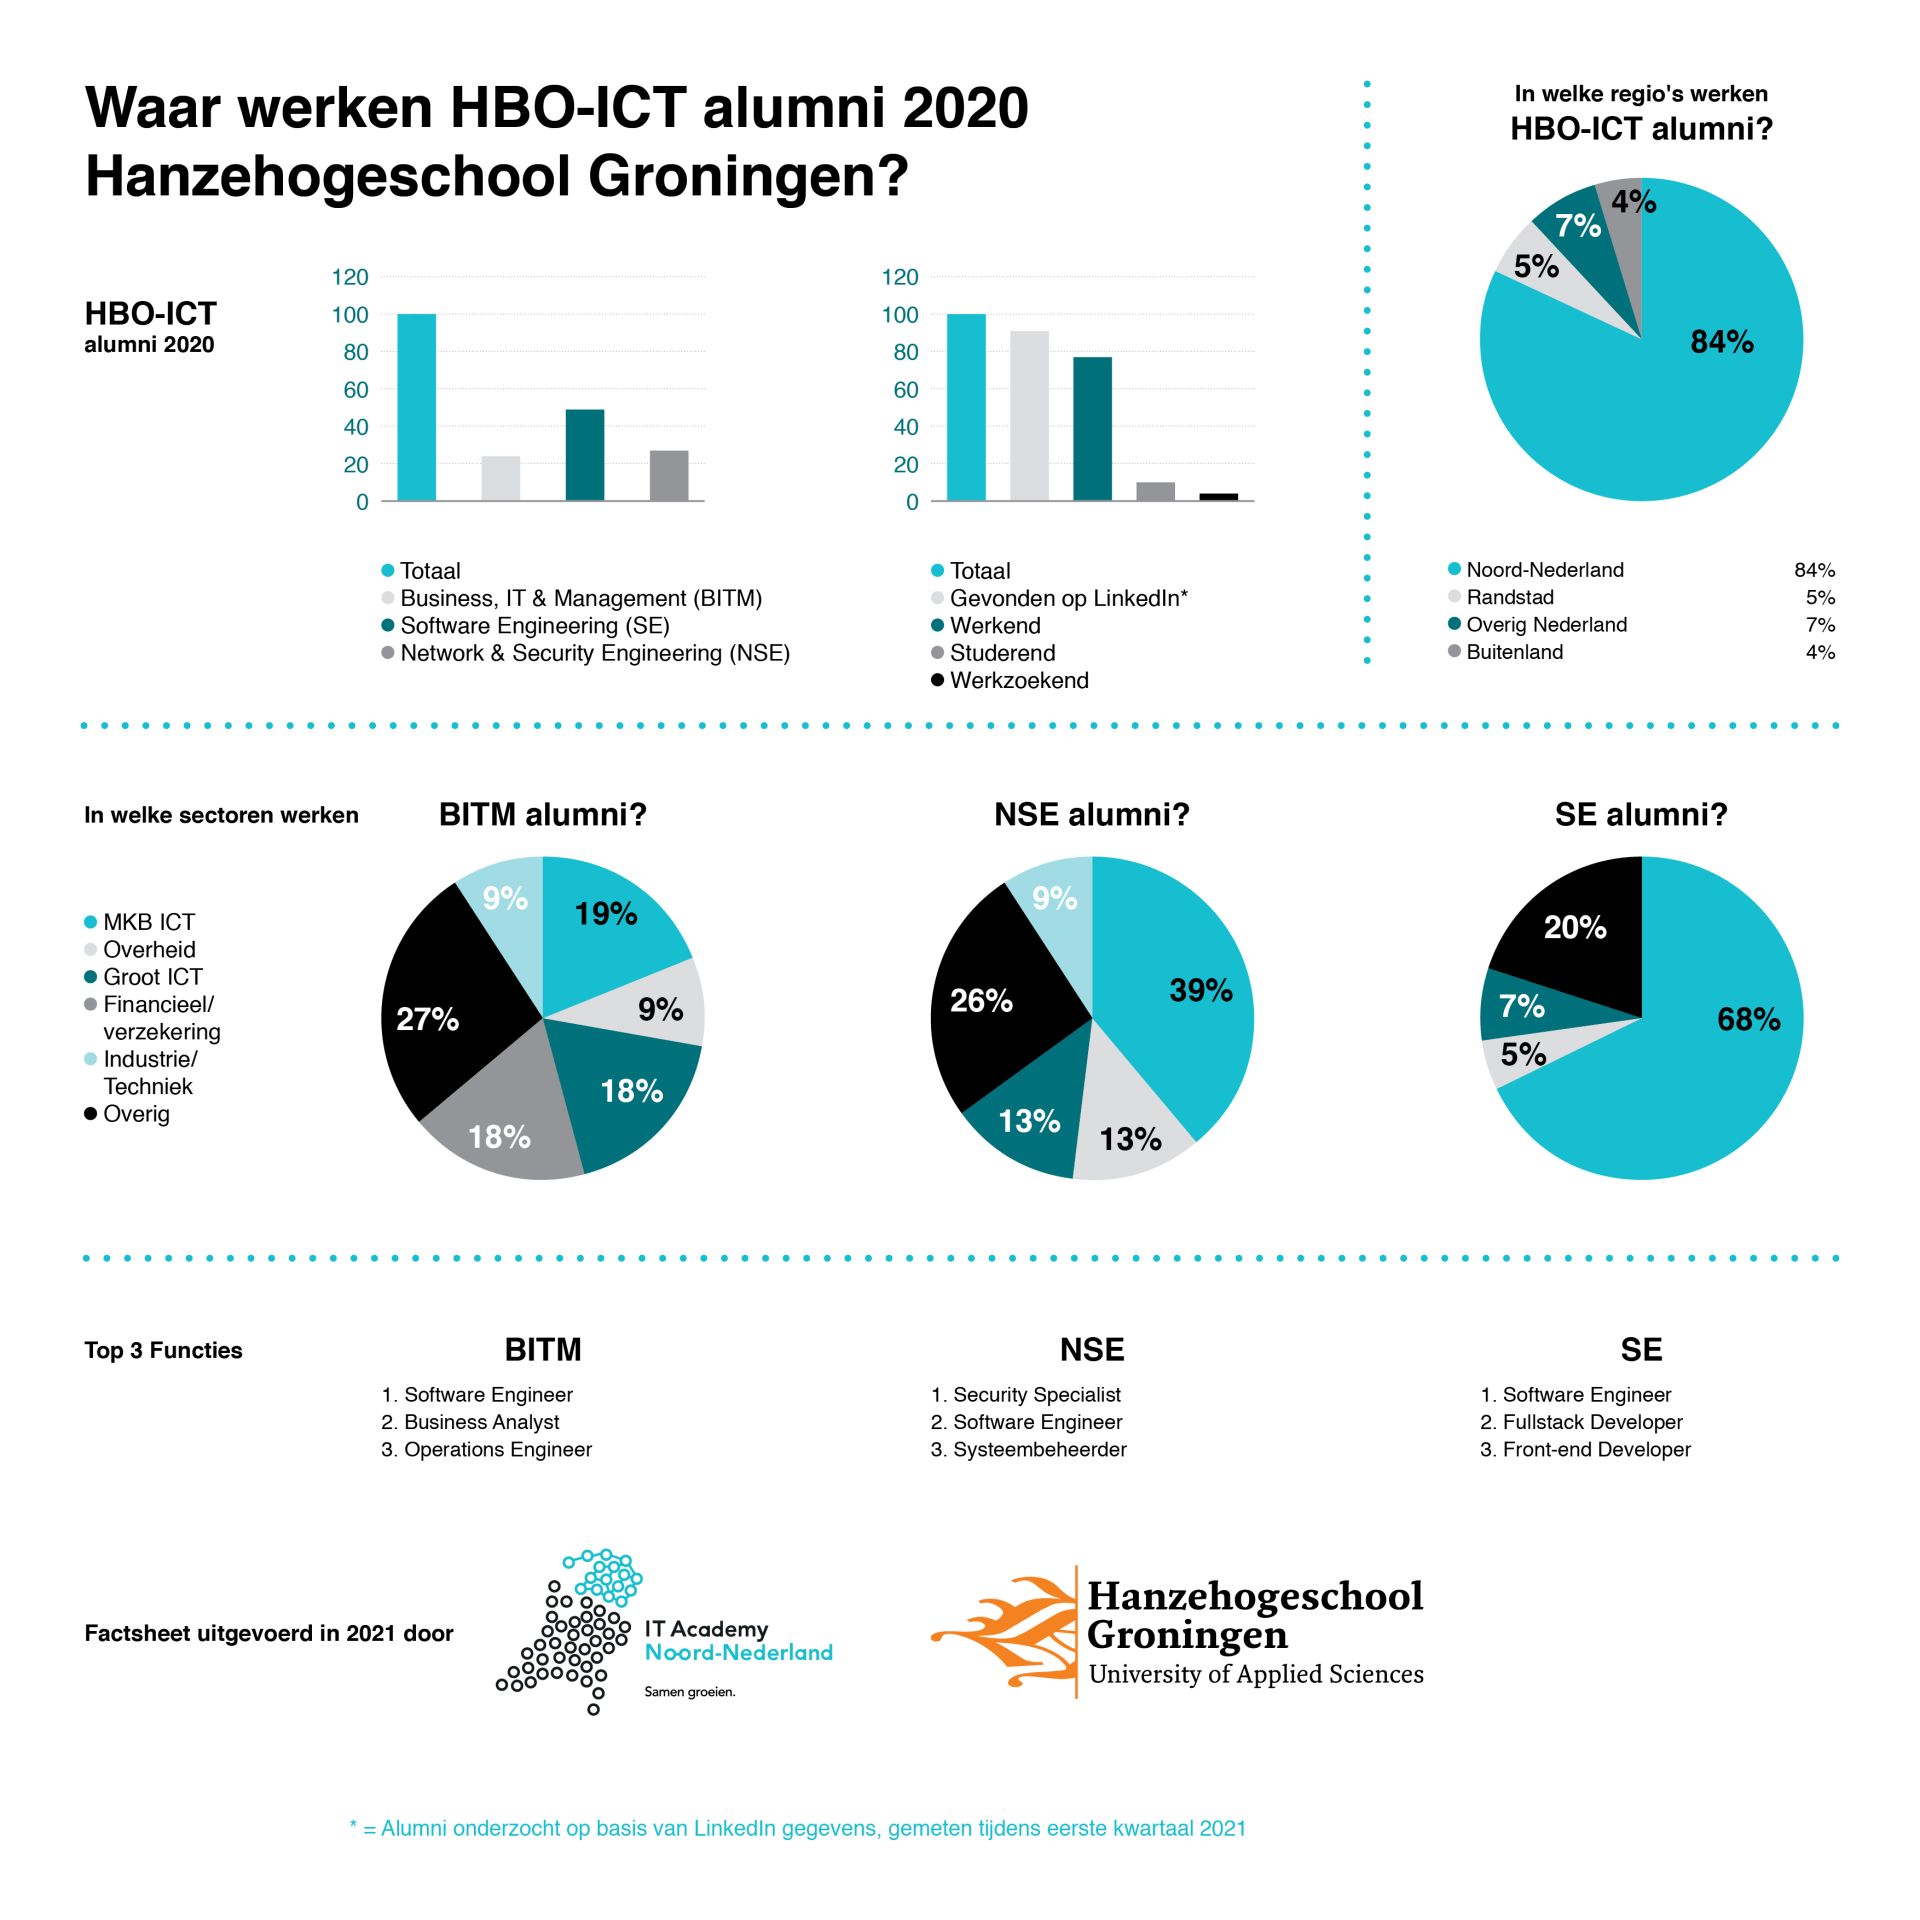 Waar werken HBO-ICT alumni 2020 Hanzehogeschool Groningen?